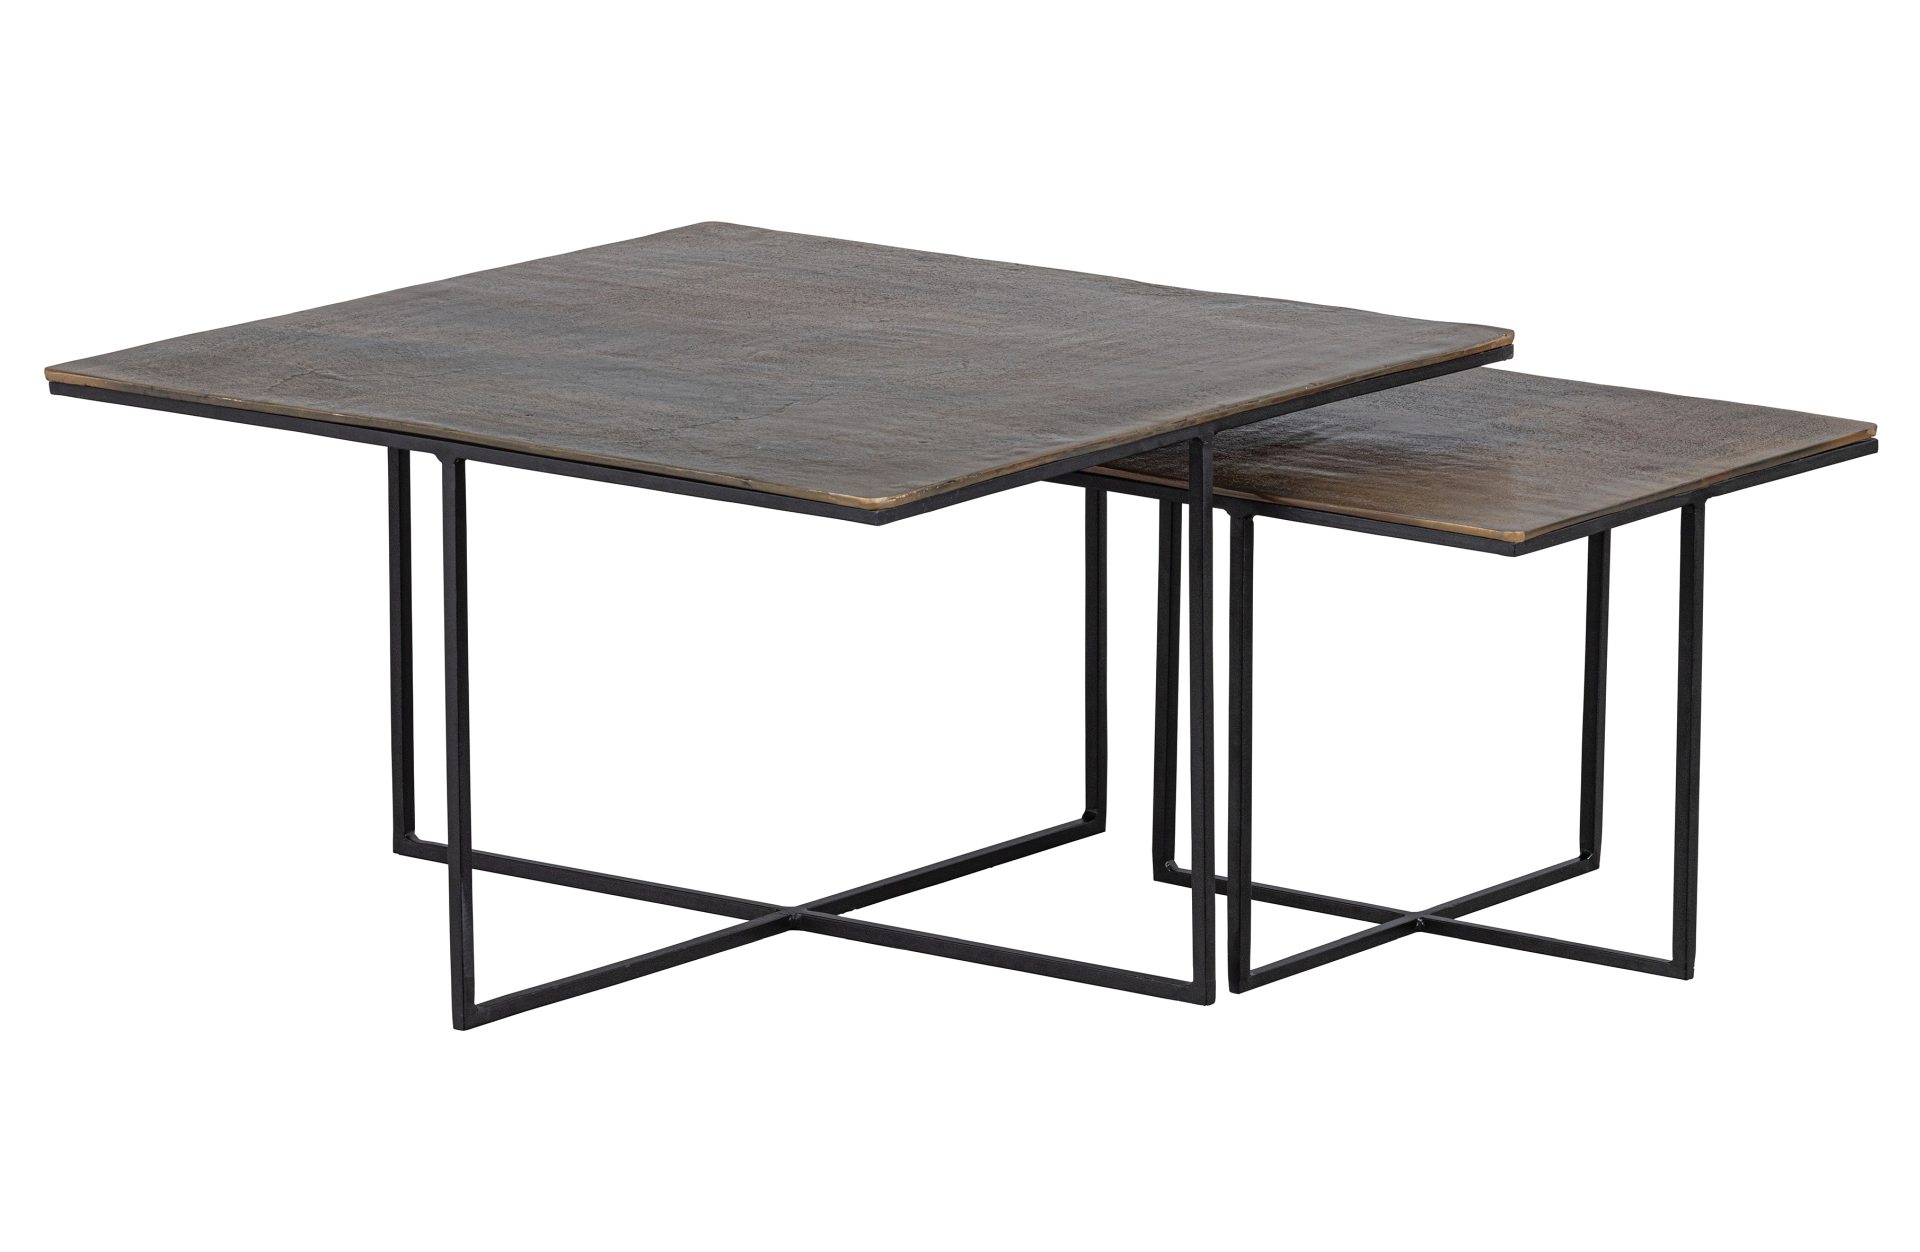 Das Beistelltisch 2er-Set Olan wurde aus Metall gefertigt. Es überzeugt mit seinem industriellem Design. Die Tischplatte besitzt ein Messing Farbton, das Gestell ist schwarz.